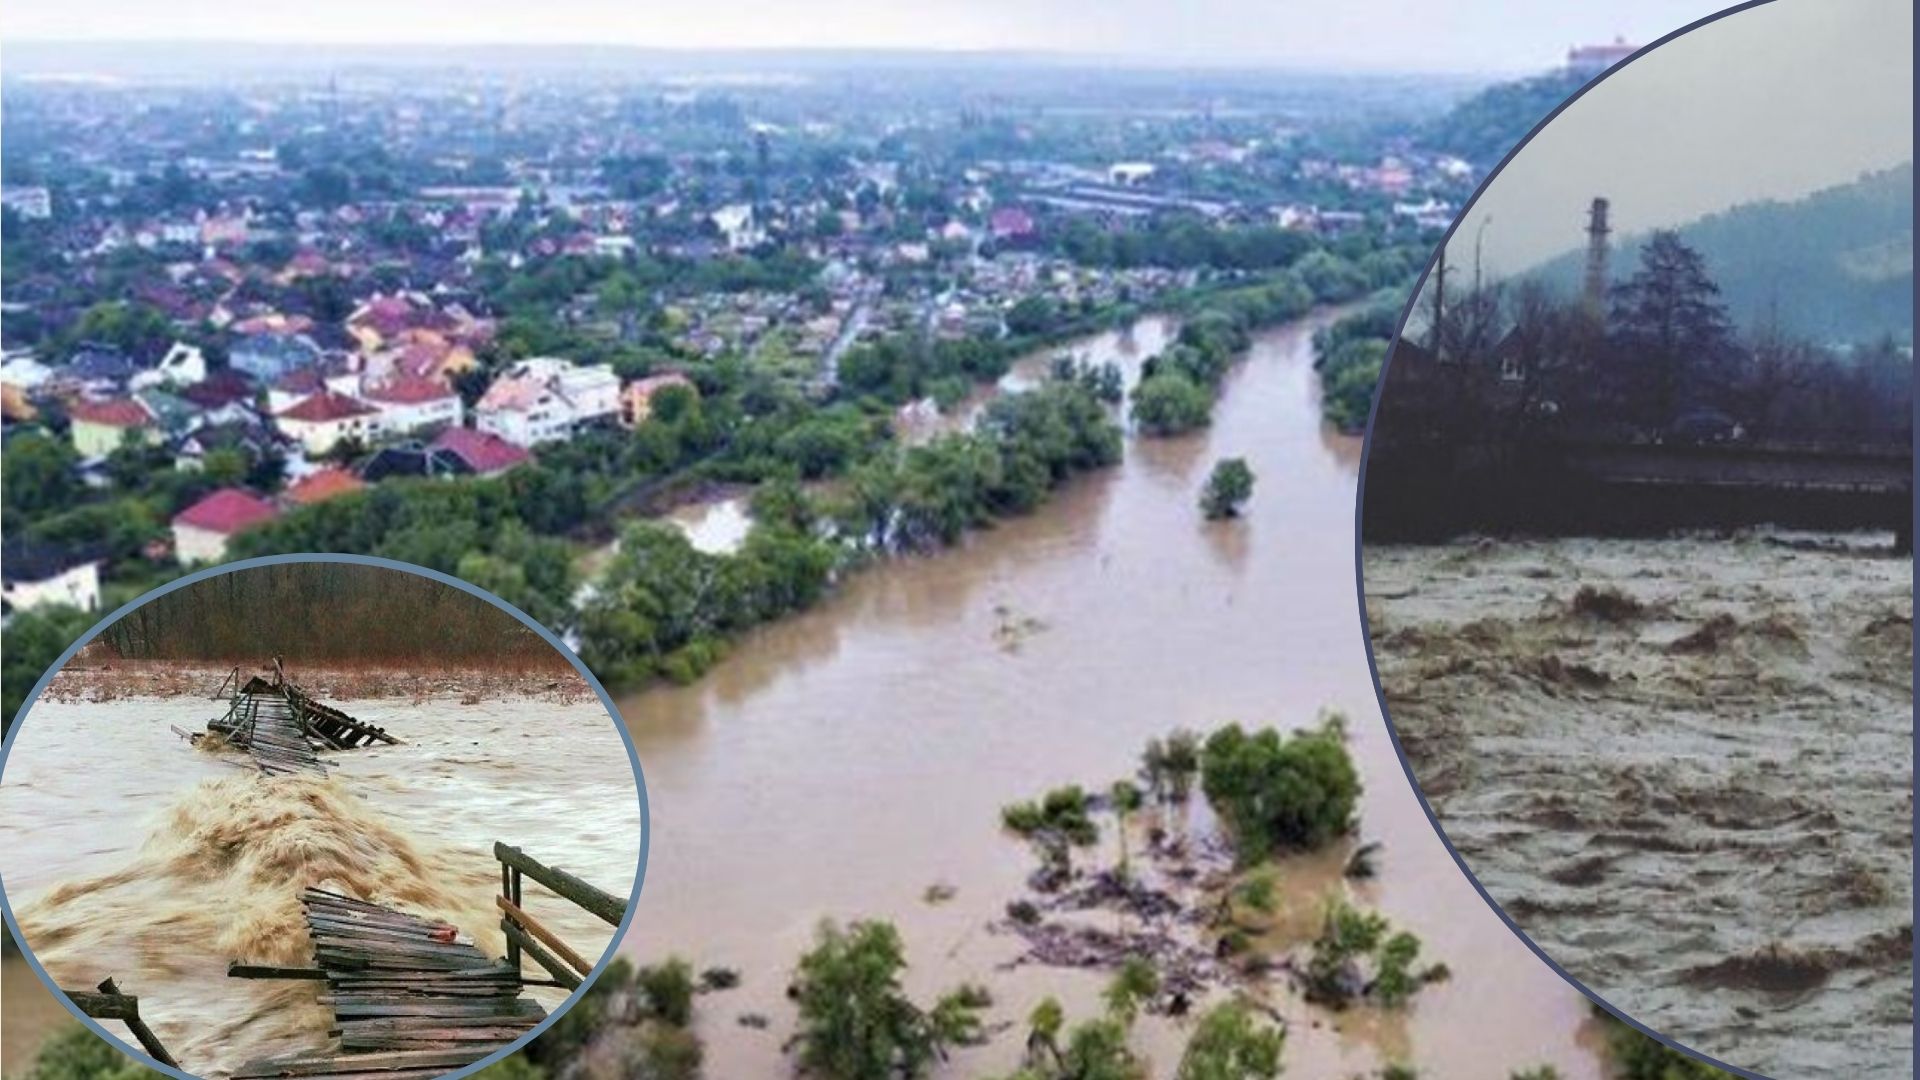 Специалисты провели обследование по всему региону и подсчитали ущерб от наводнений, повышения уровня воды в реках из-за обильных осадков, которые произошли в конце зимнего периода.